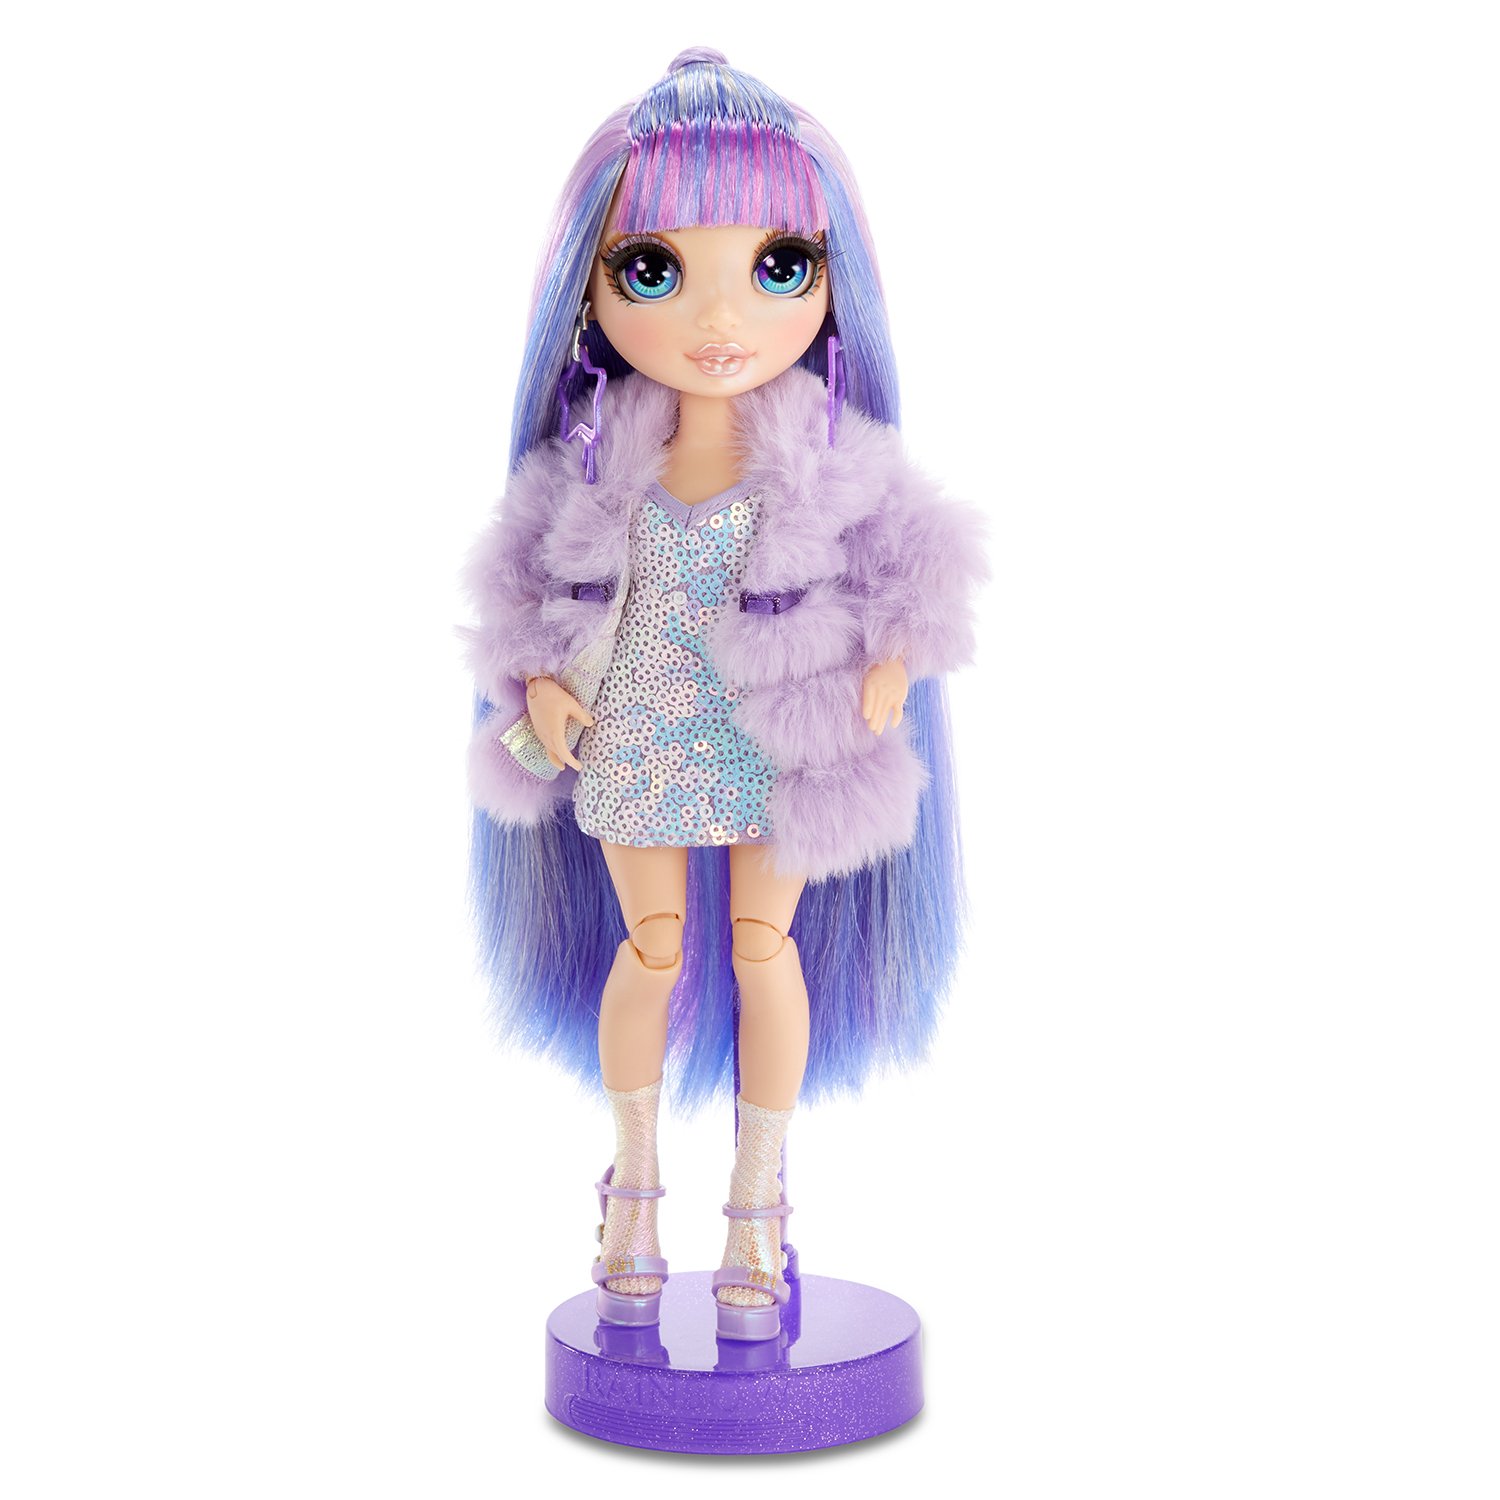 Кукла Rainbow High Fashion Виолет Уиллоу 569602